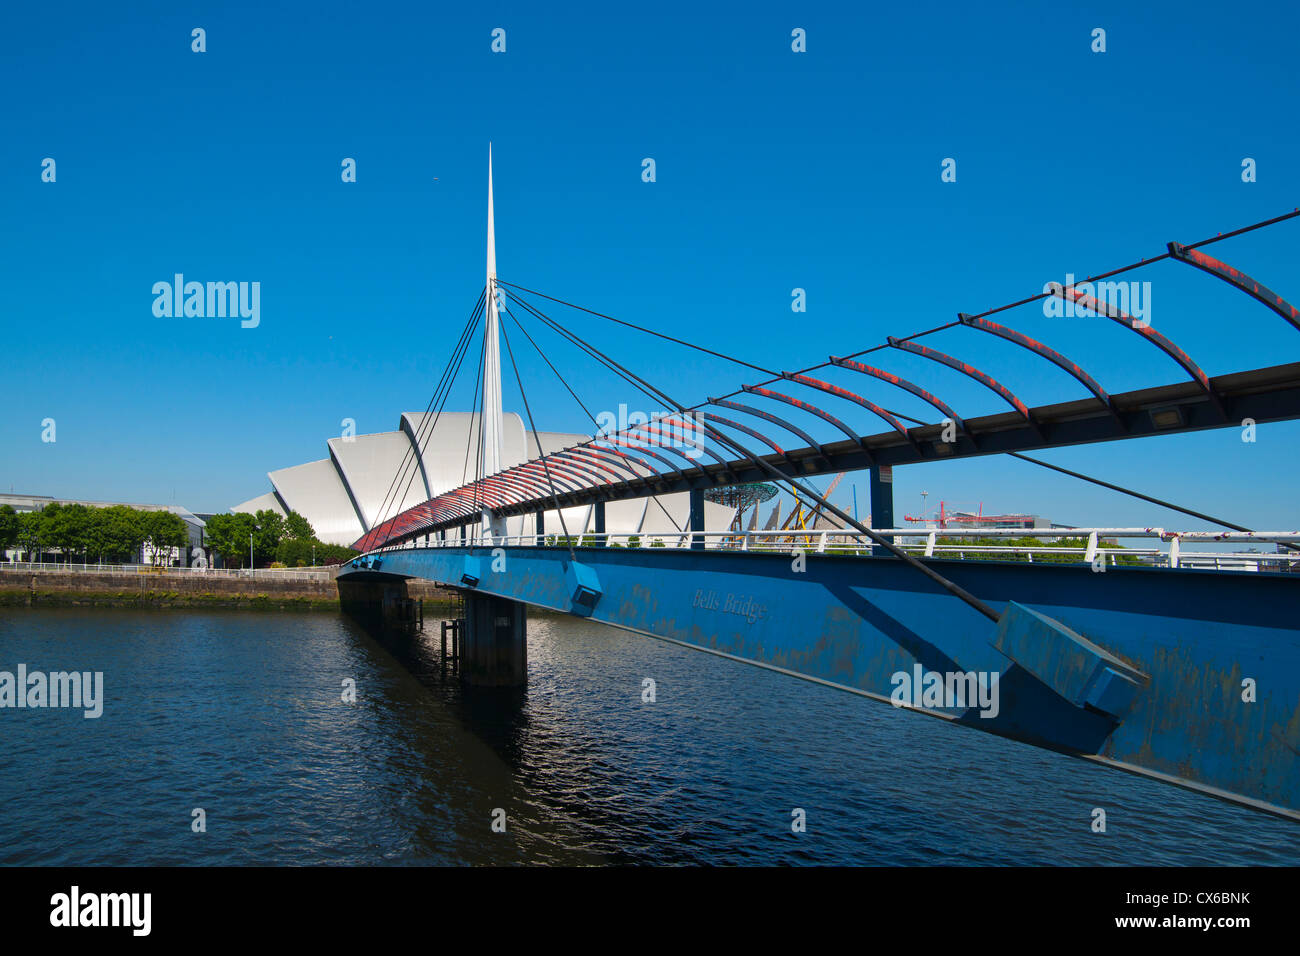 Pont de la rivière Clyde, cloches, Armadillo, Glasgow, Strathclyde, Écosse Région Banque D'Images